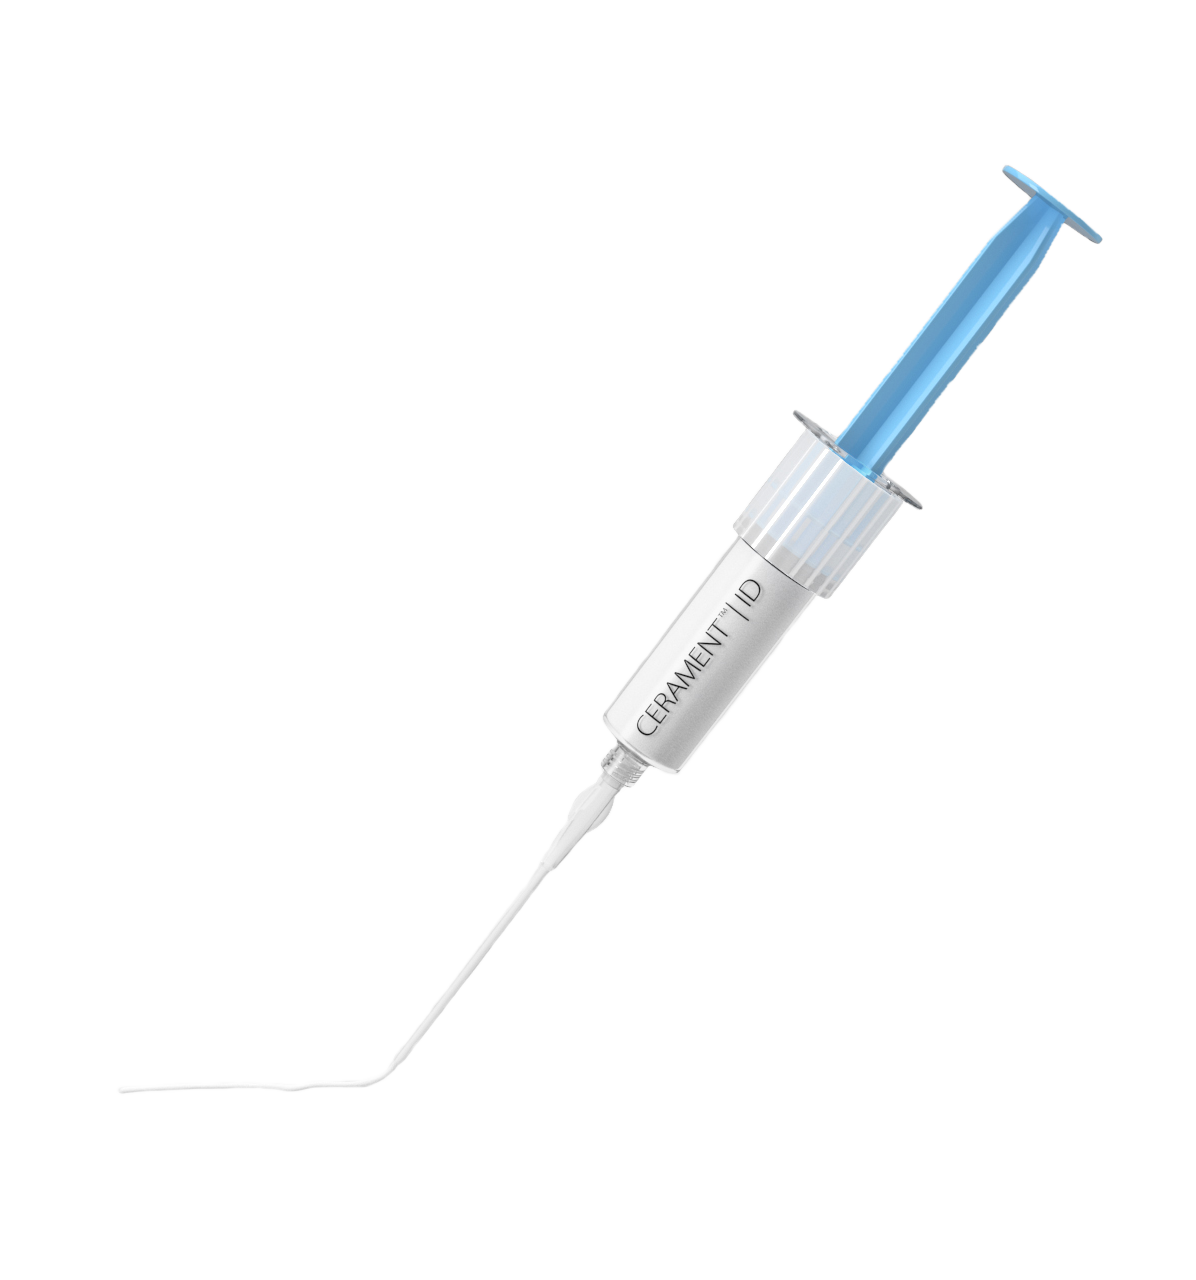 cerament bone void filler syringe